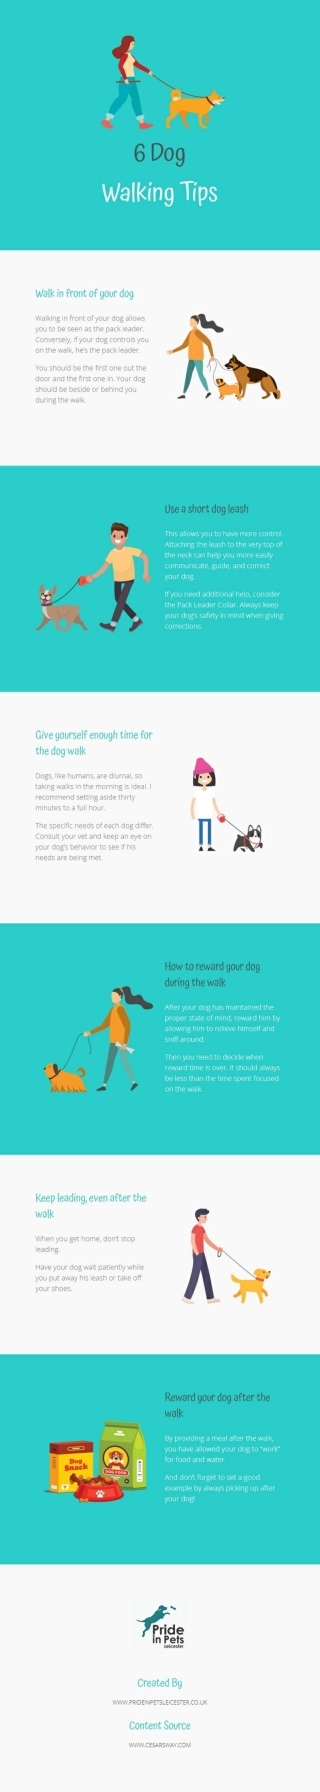 6 Dog Walking Tips